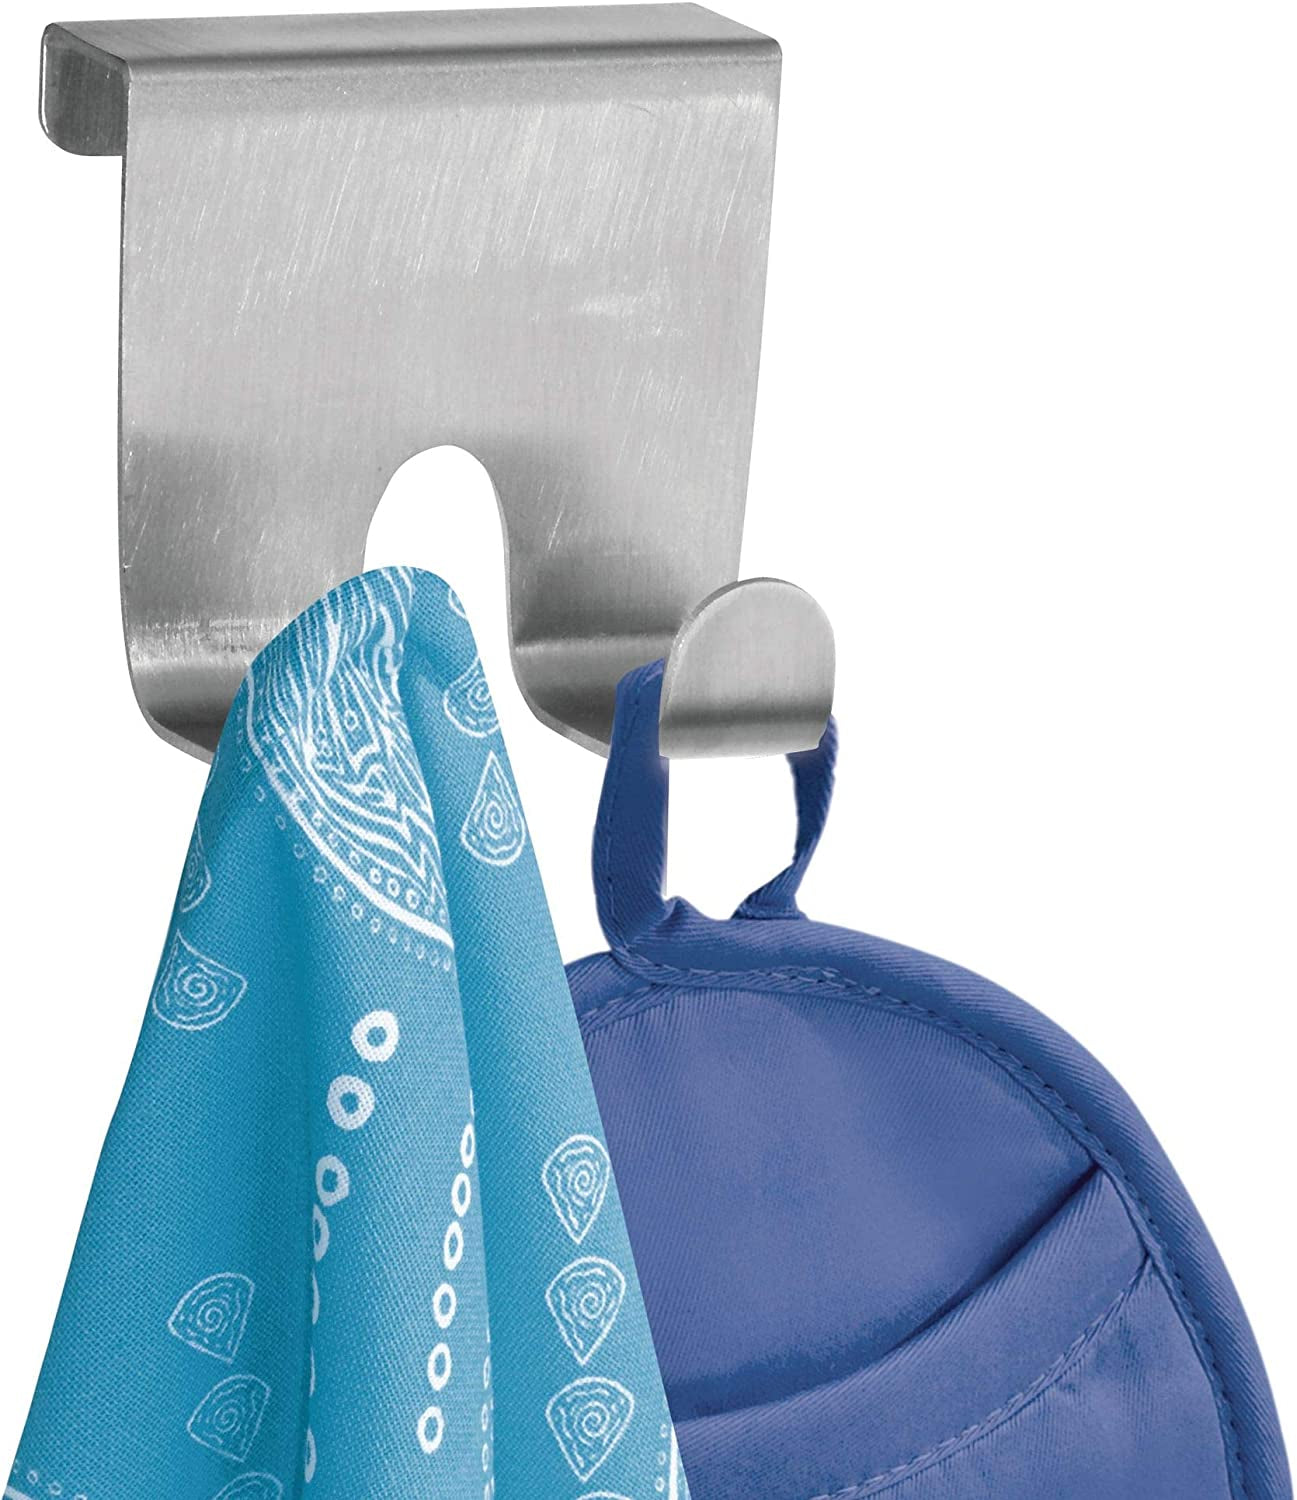 Idesign Forma over Door Hook, Small Stainless Steel Towel Hanger, Towel Hook Rack, Silver